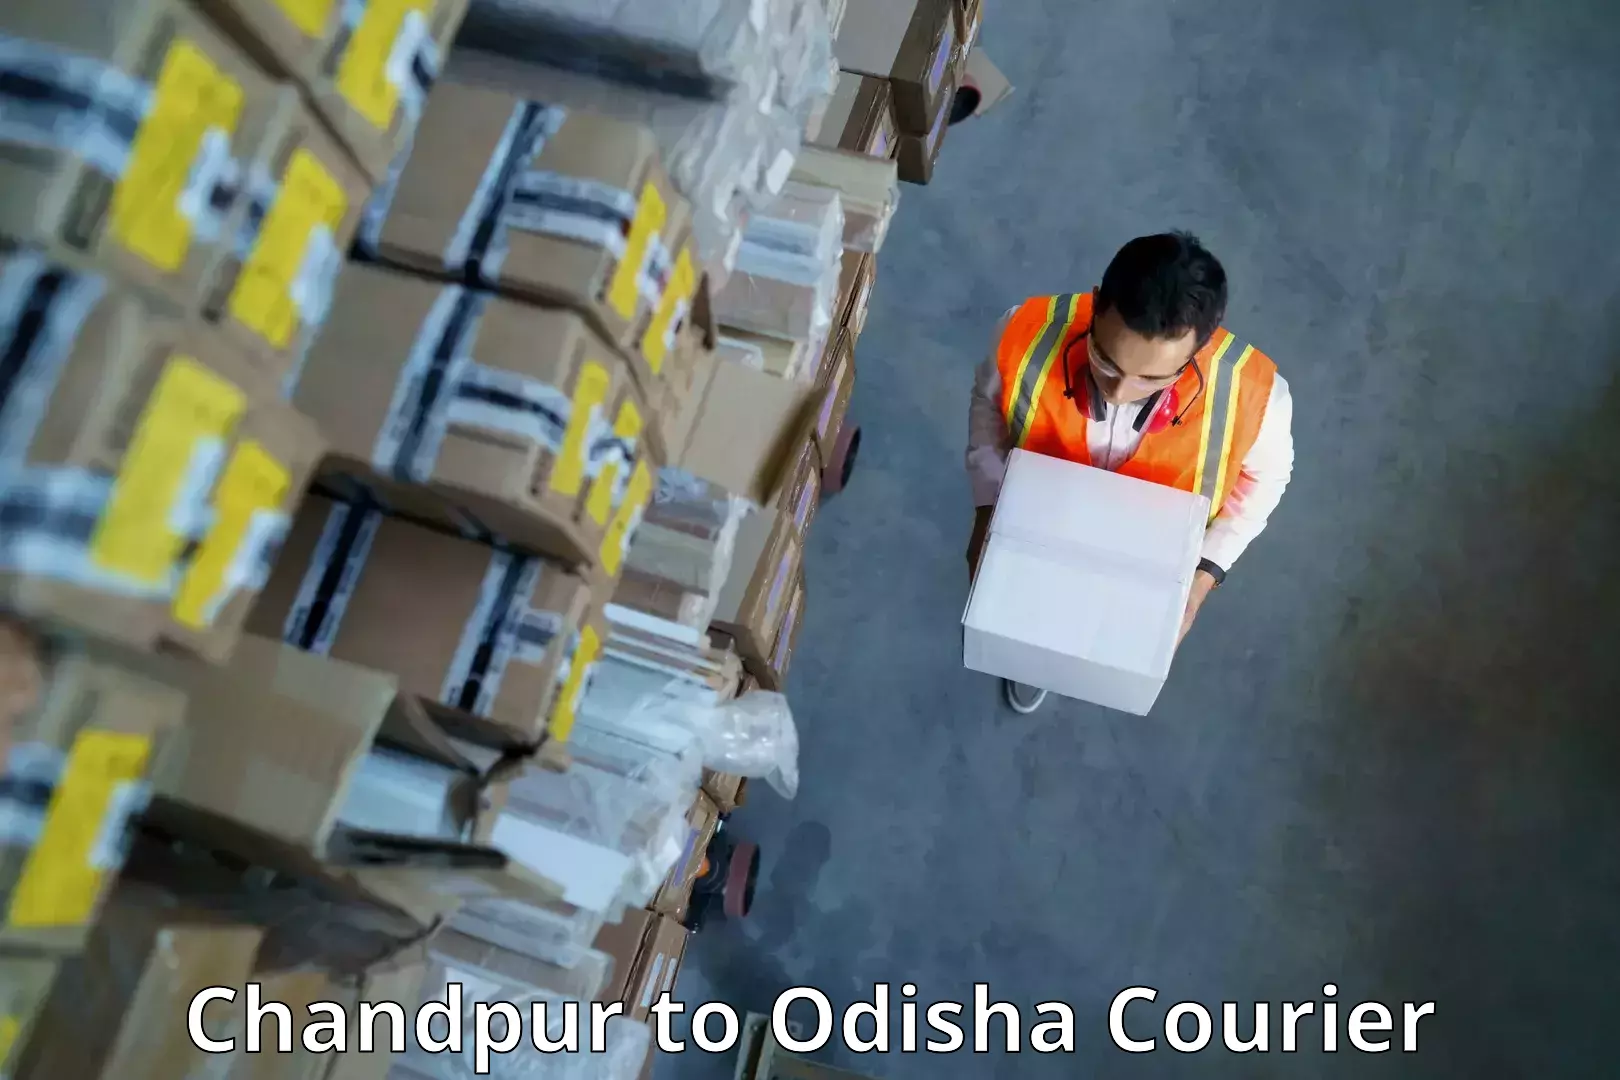 Customer-centric shipping Chandpur to Nabarangpur